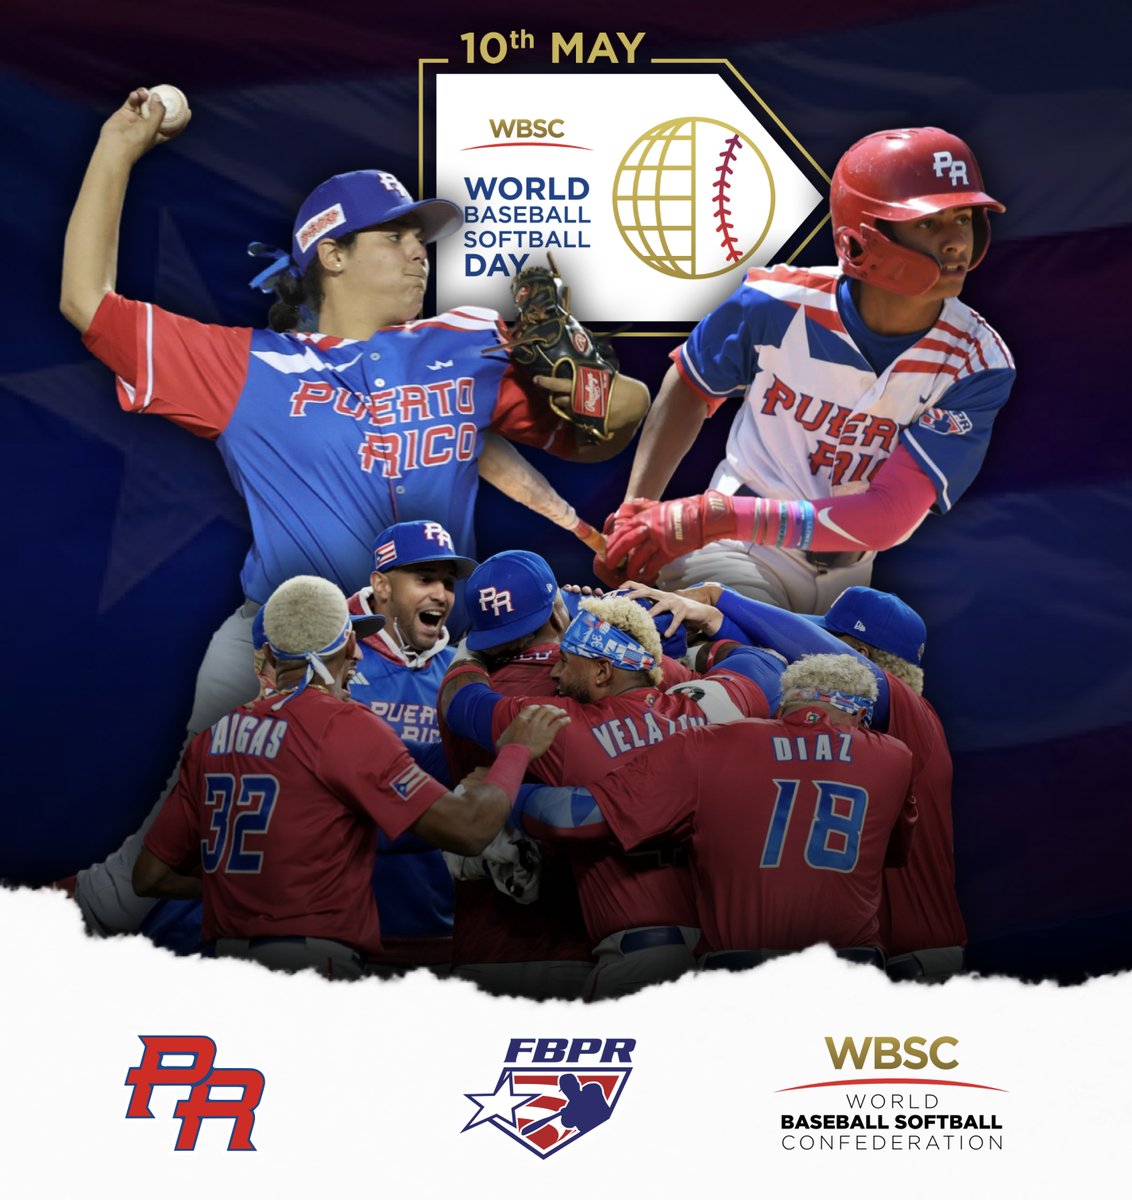 ¡Puerto Rico🇵🇷 se une a la celebración del #BaseballSoftballDay! ⚾️ Felicitaciones a las federaciones hermanas y a la @WBSC #WBSD #LosNuestros #LasNuestras #FBPR